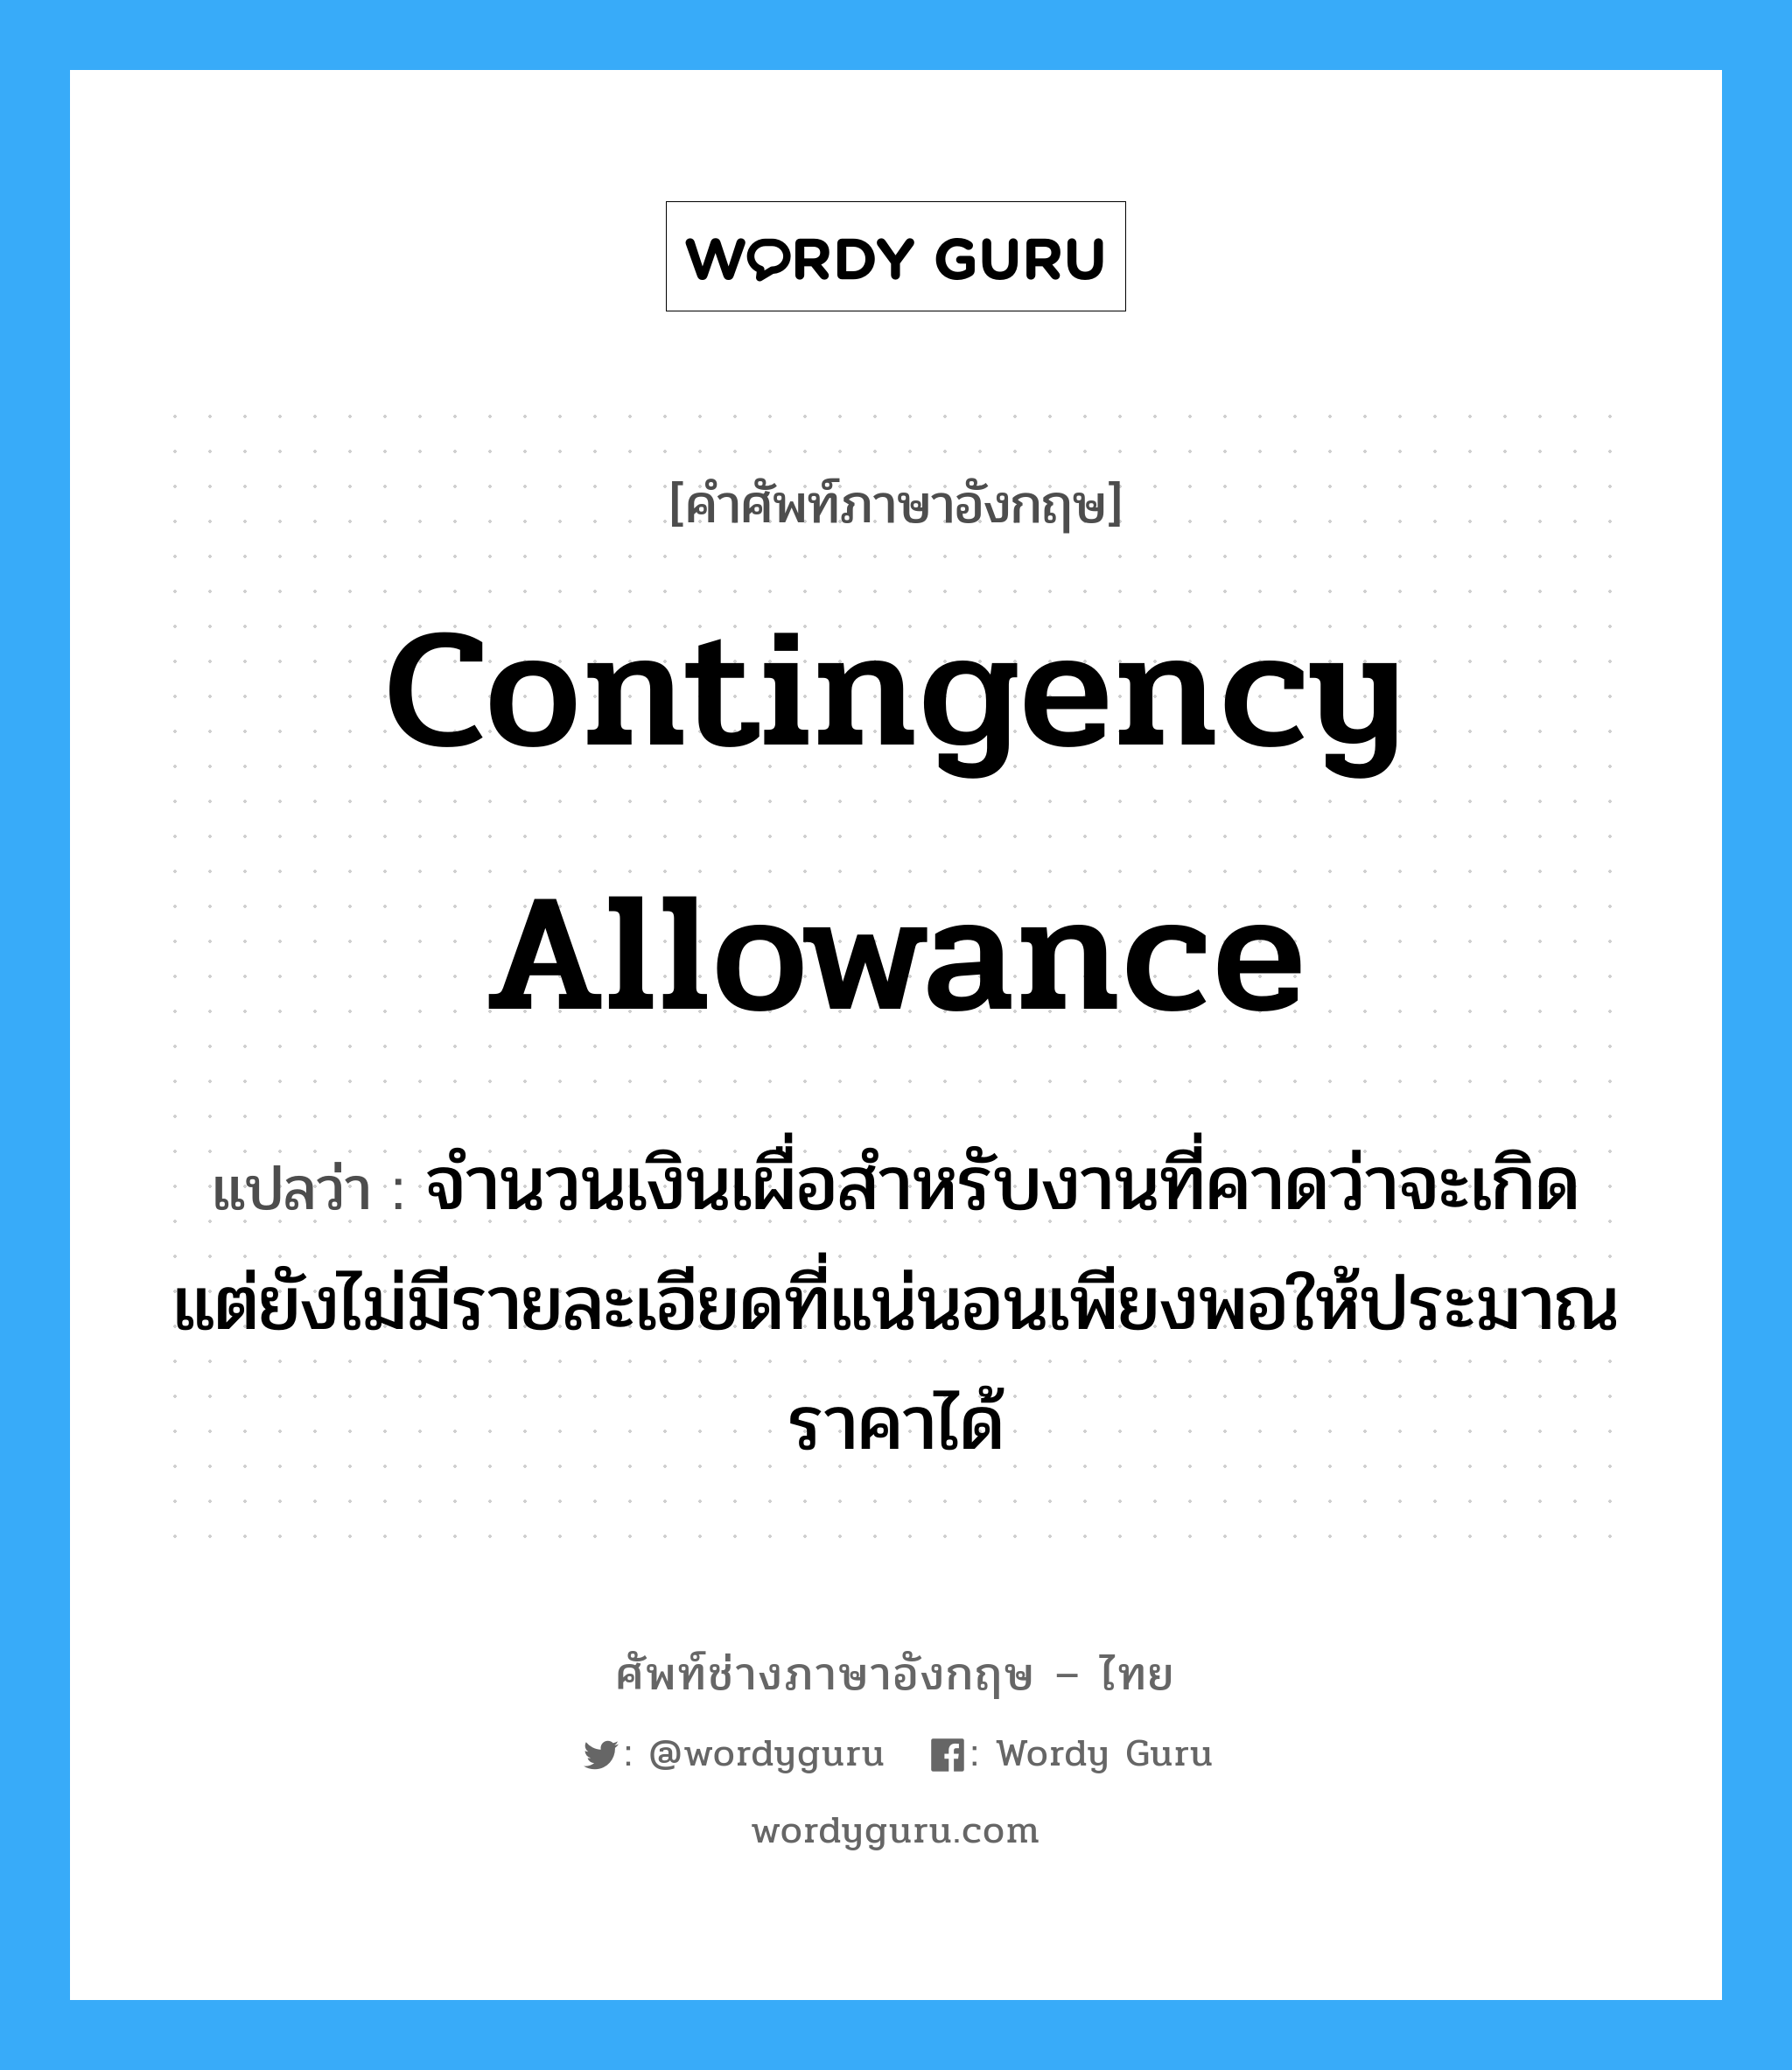 Contingency Allowance แปลว่า?, คำศัพท์ช่างภาษาอังกฤษ - ไทย Contingency Allowance คำศัพท์ภาษาอังกฤษ Contingency Allowance แปลว่า จำนวนเงินเผื่อสำหรับงานที่คาดว่าจะเกิด แต่ยังไม่มีรายละเอียดที่แน่นอนเพียงพอให้ประมาณราคาได้